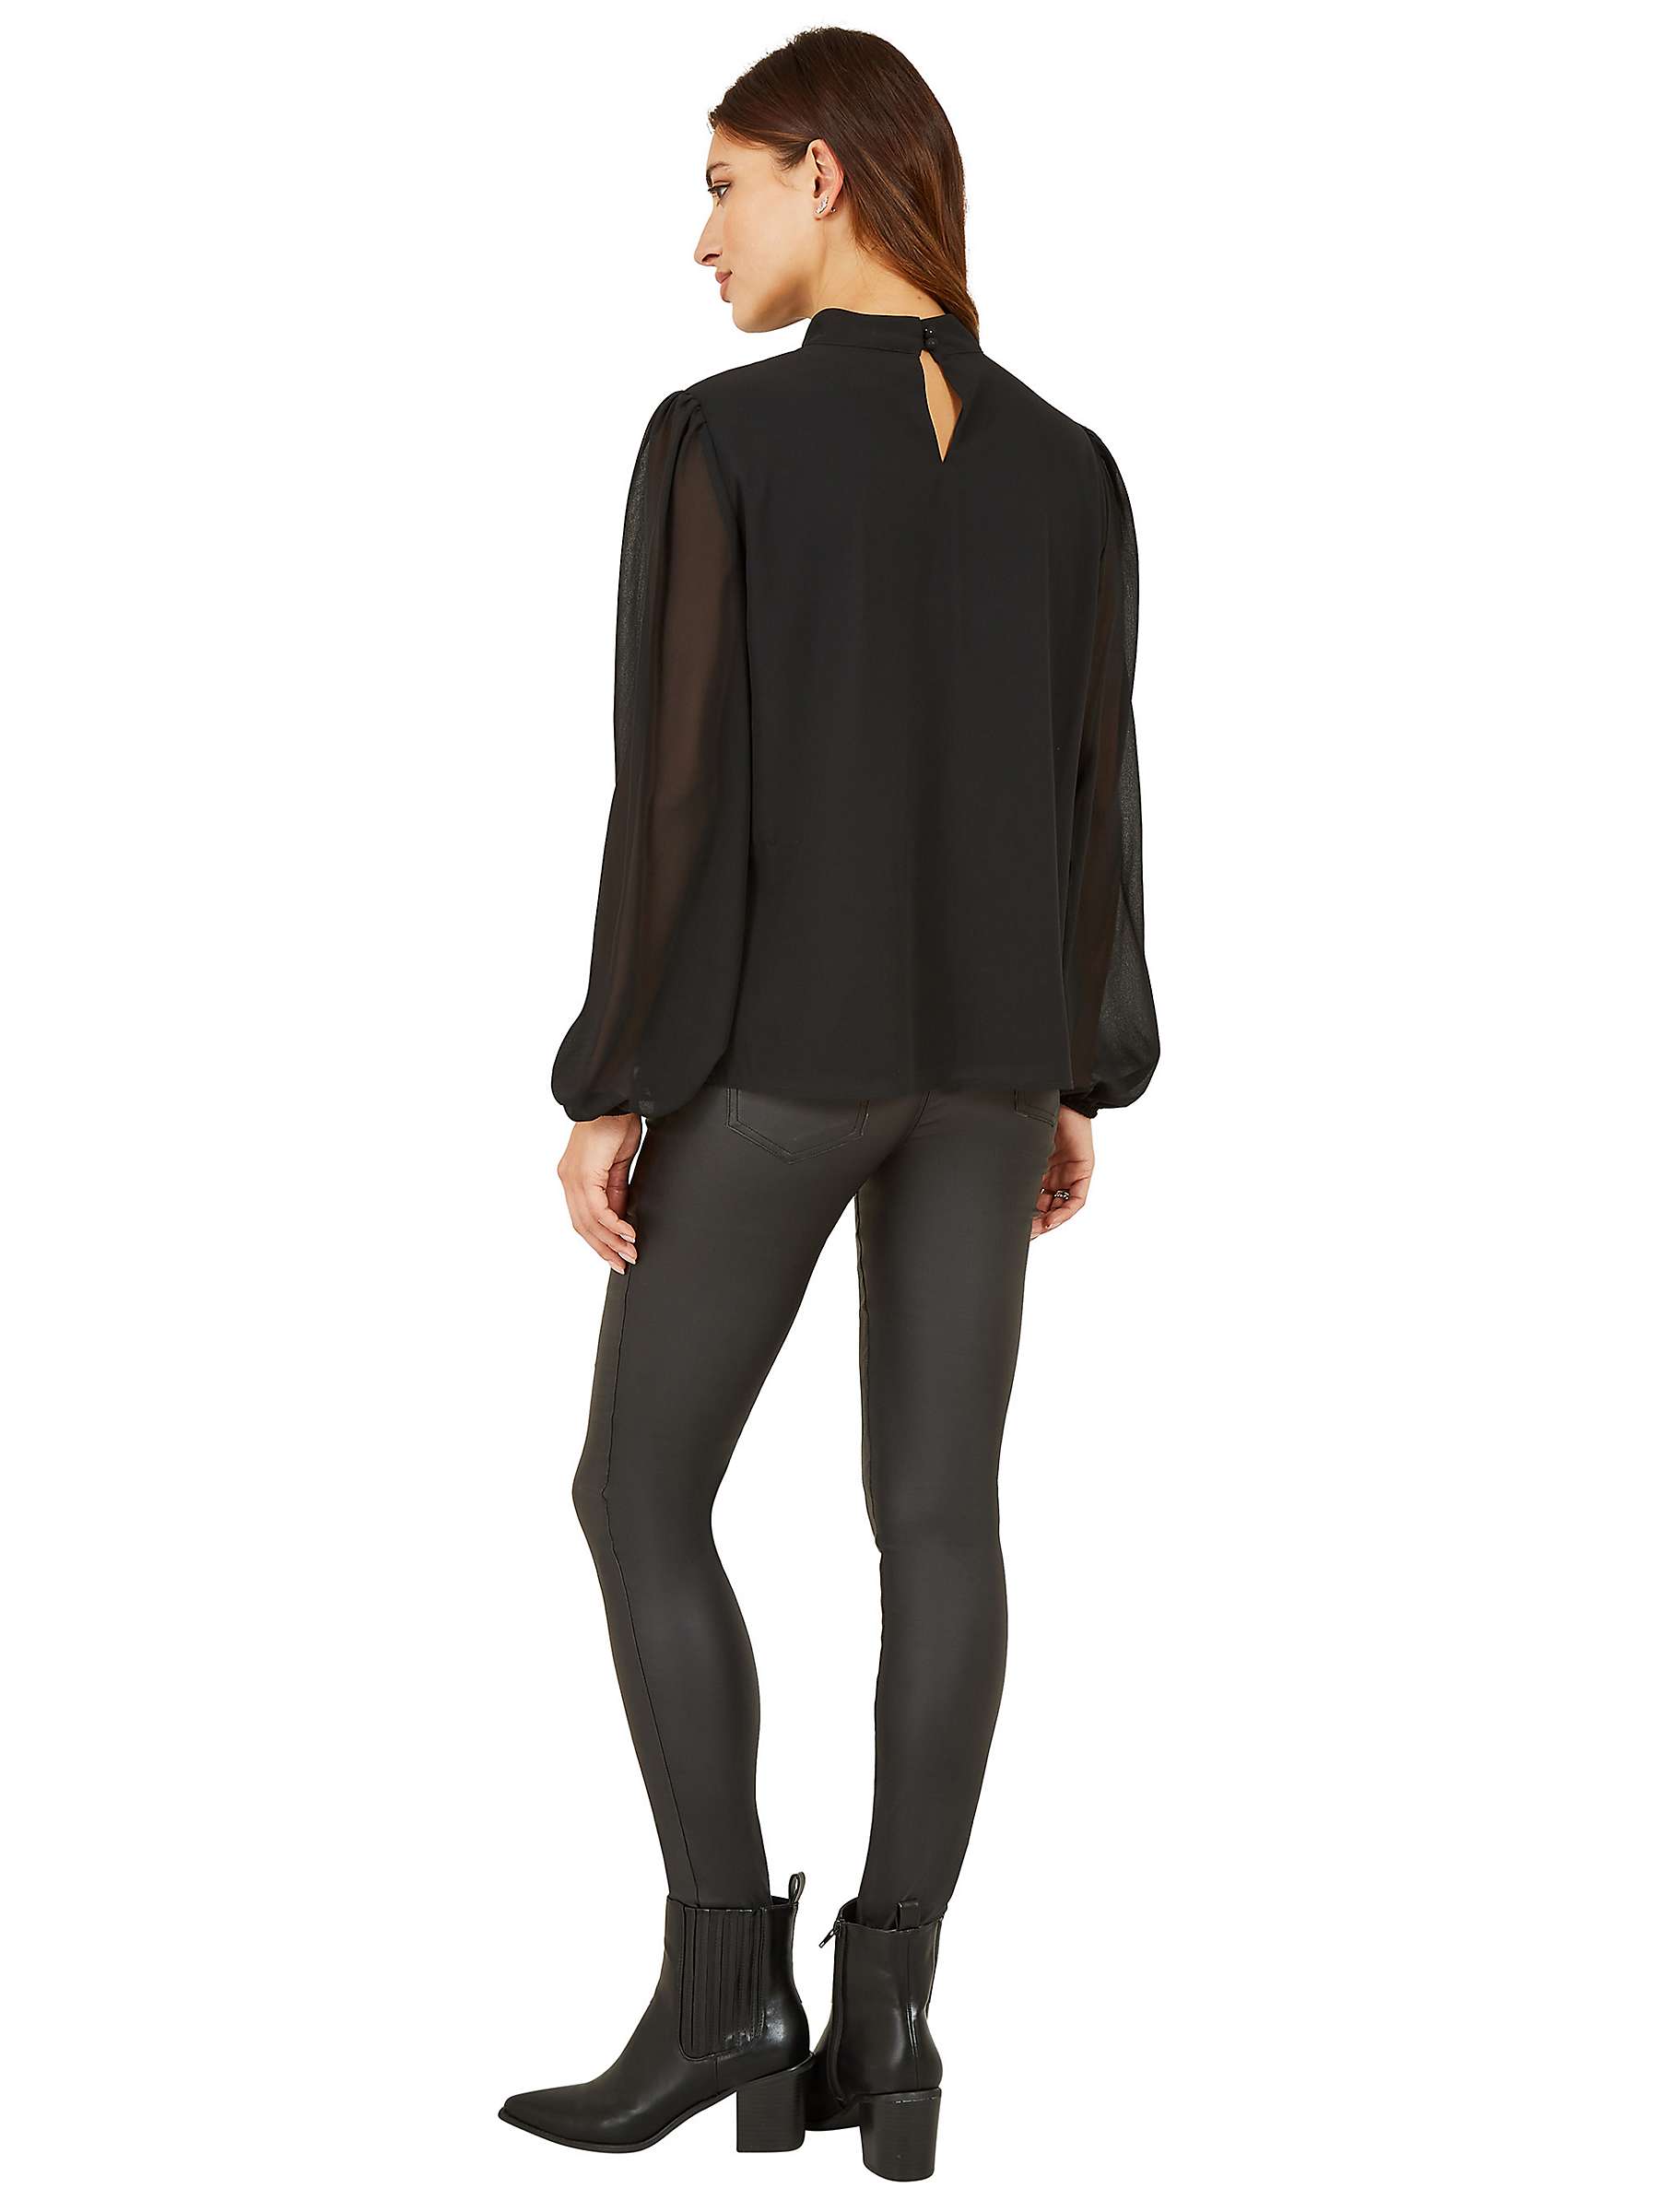 Buy Mela London Pleated Long Sleeve Top, Black Online at johnlewis.com